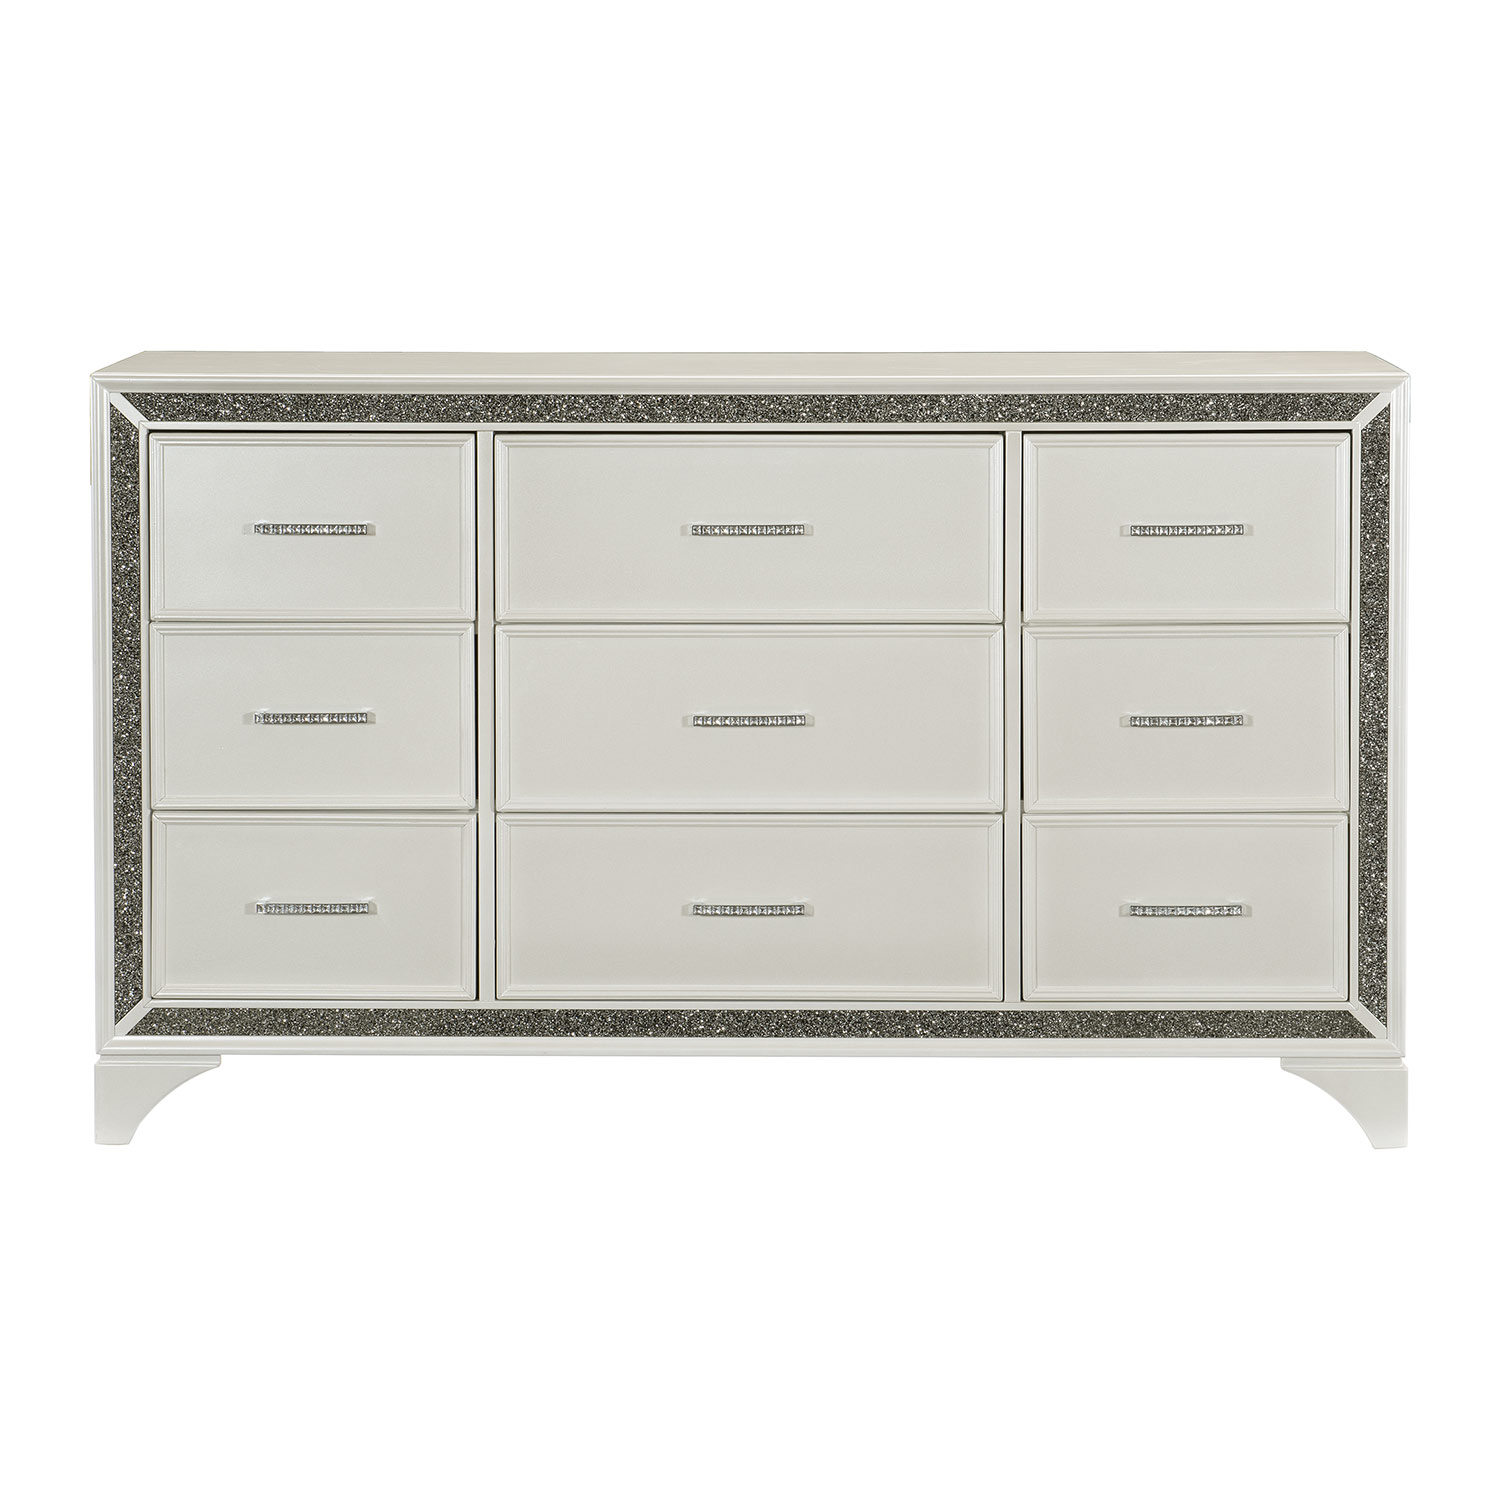 Homelegance Salon Dresser - White Pearlescent